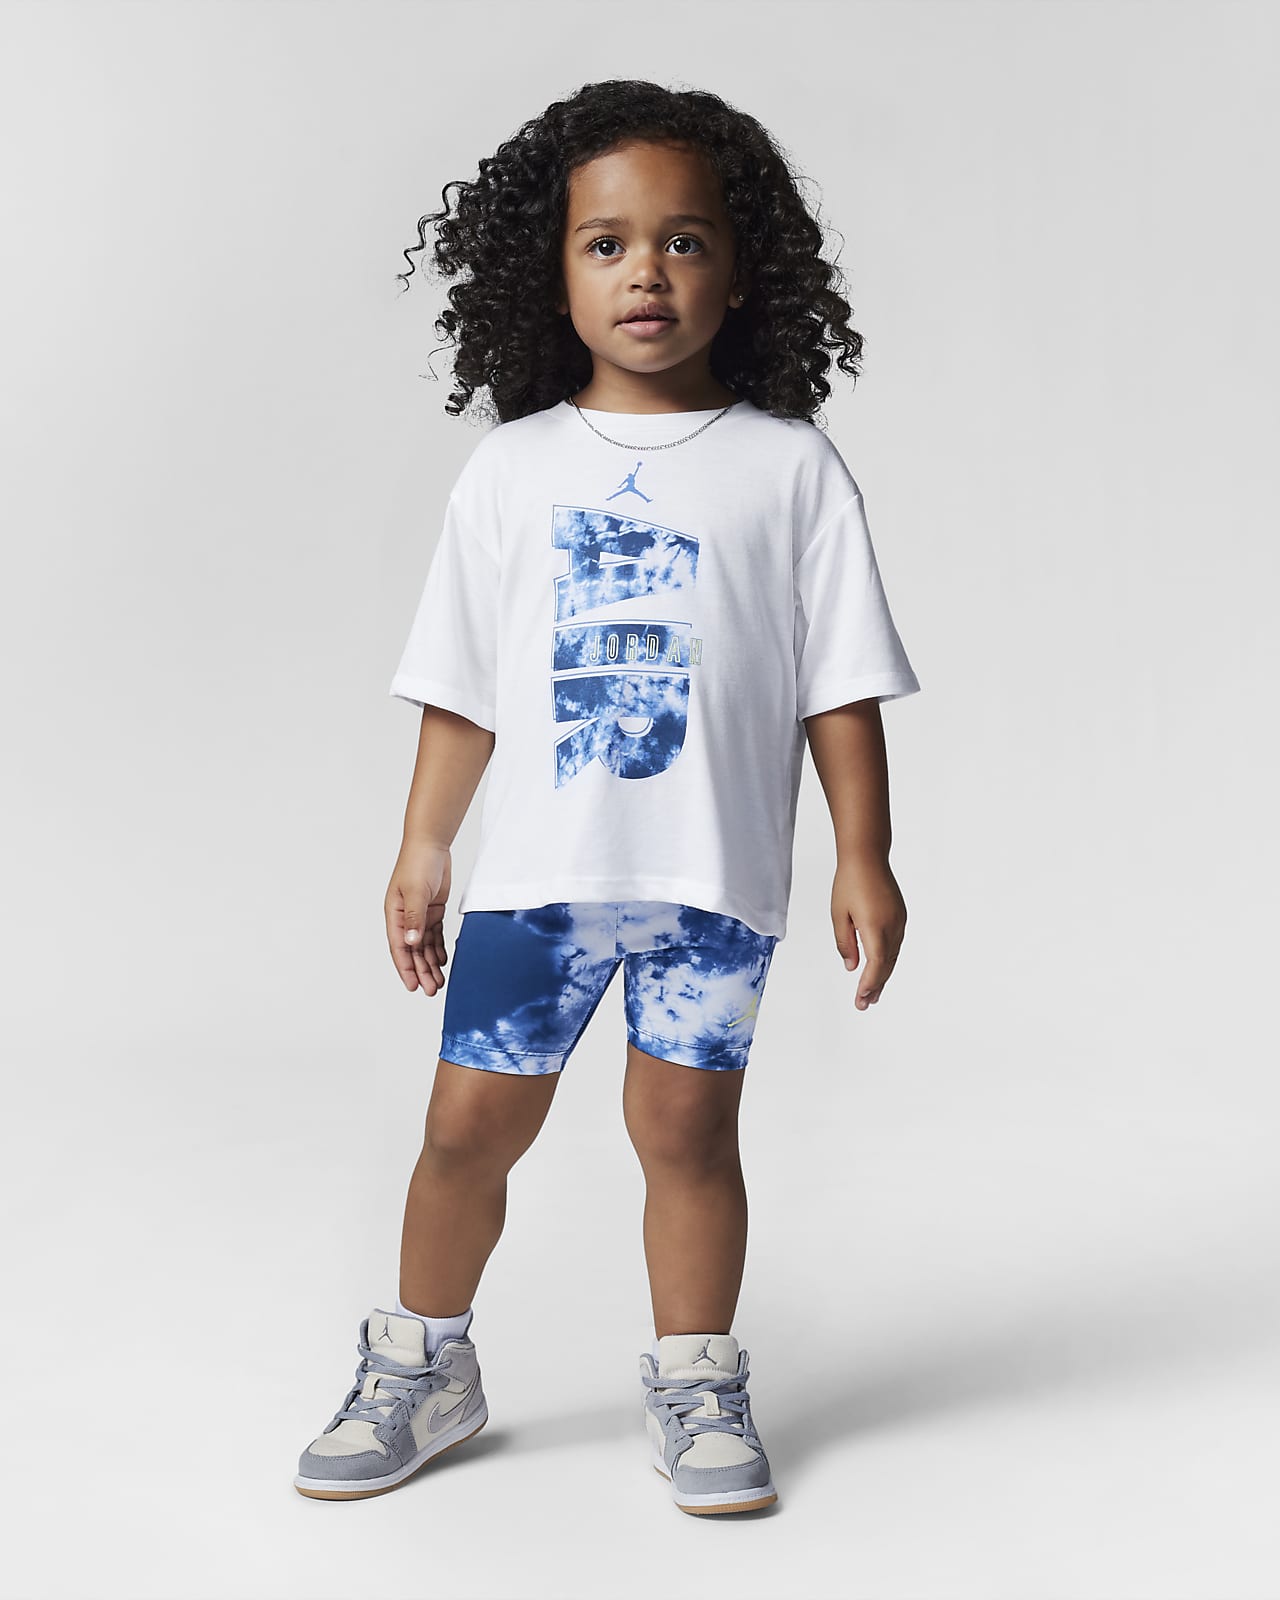 Completo t-shirt e shorts Jordan - Bimbi piccoli